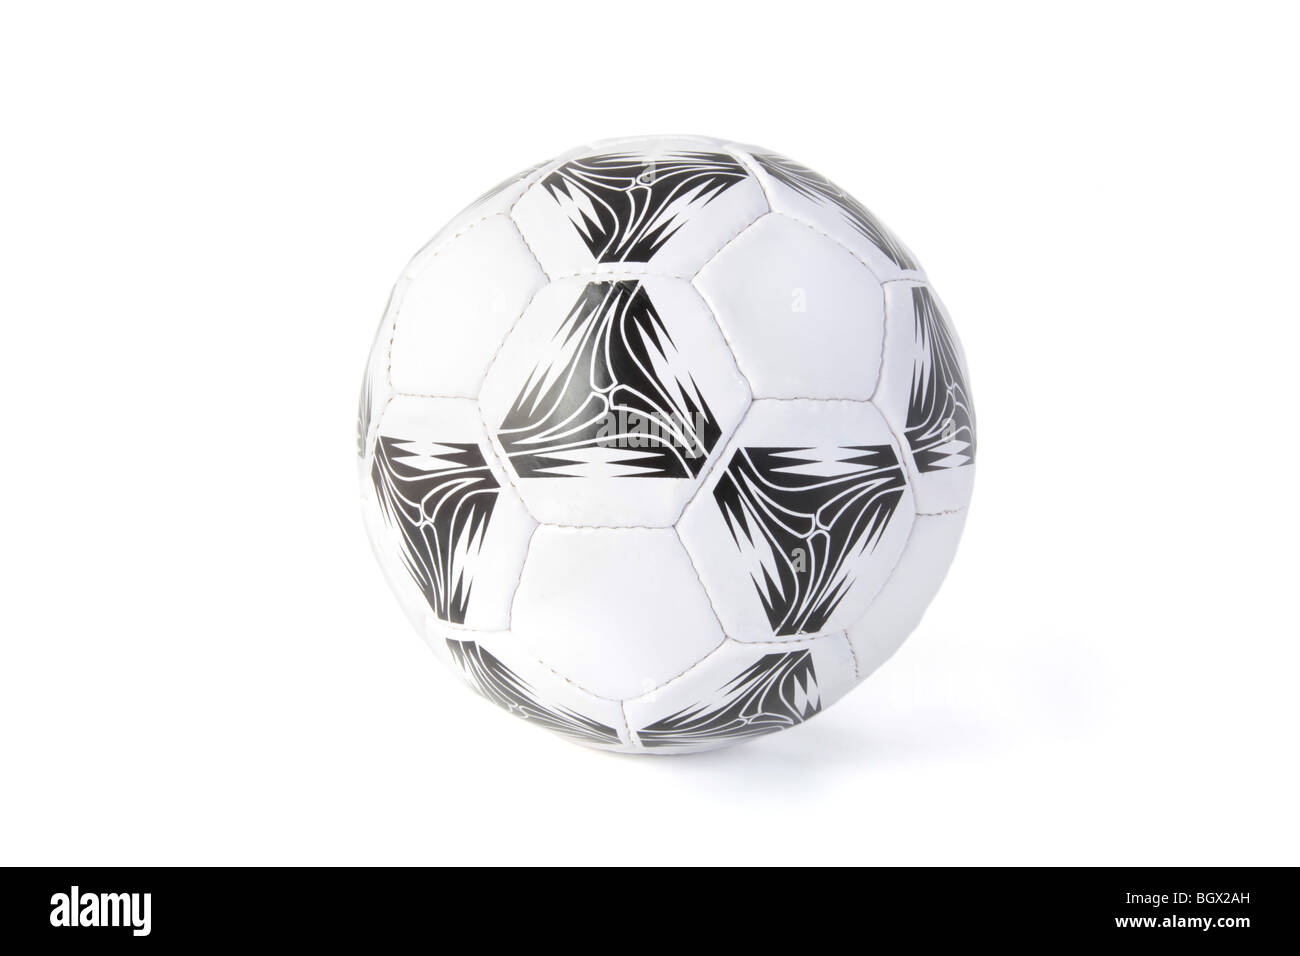 Un ballon de soccer isolé sur fond blanc. Banque D'Images